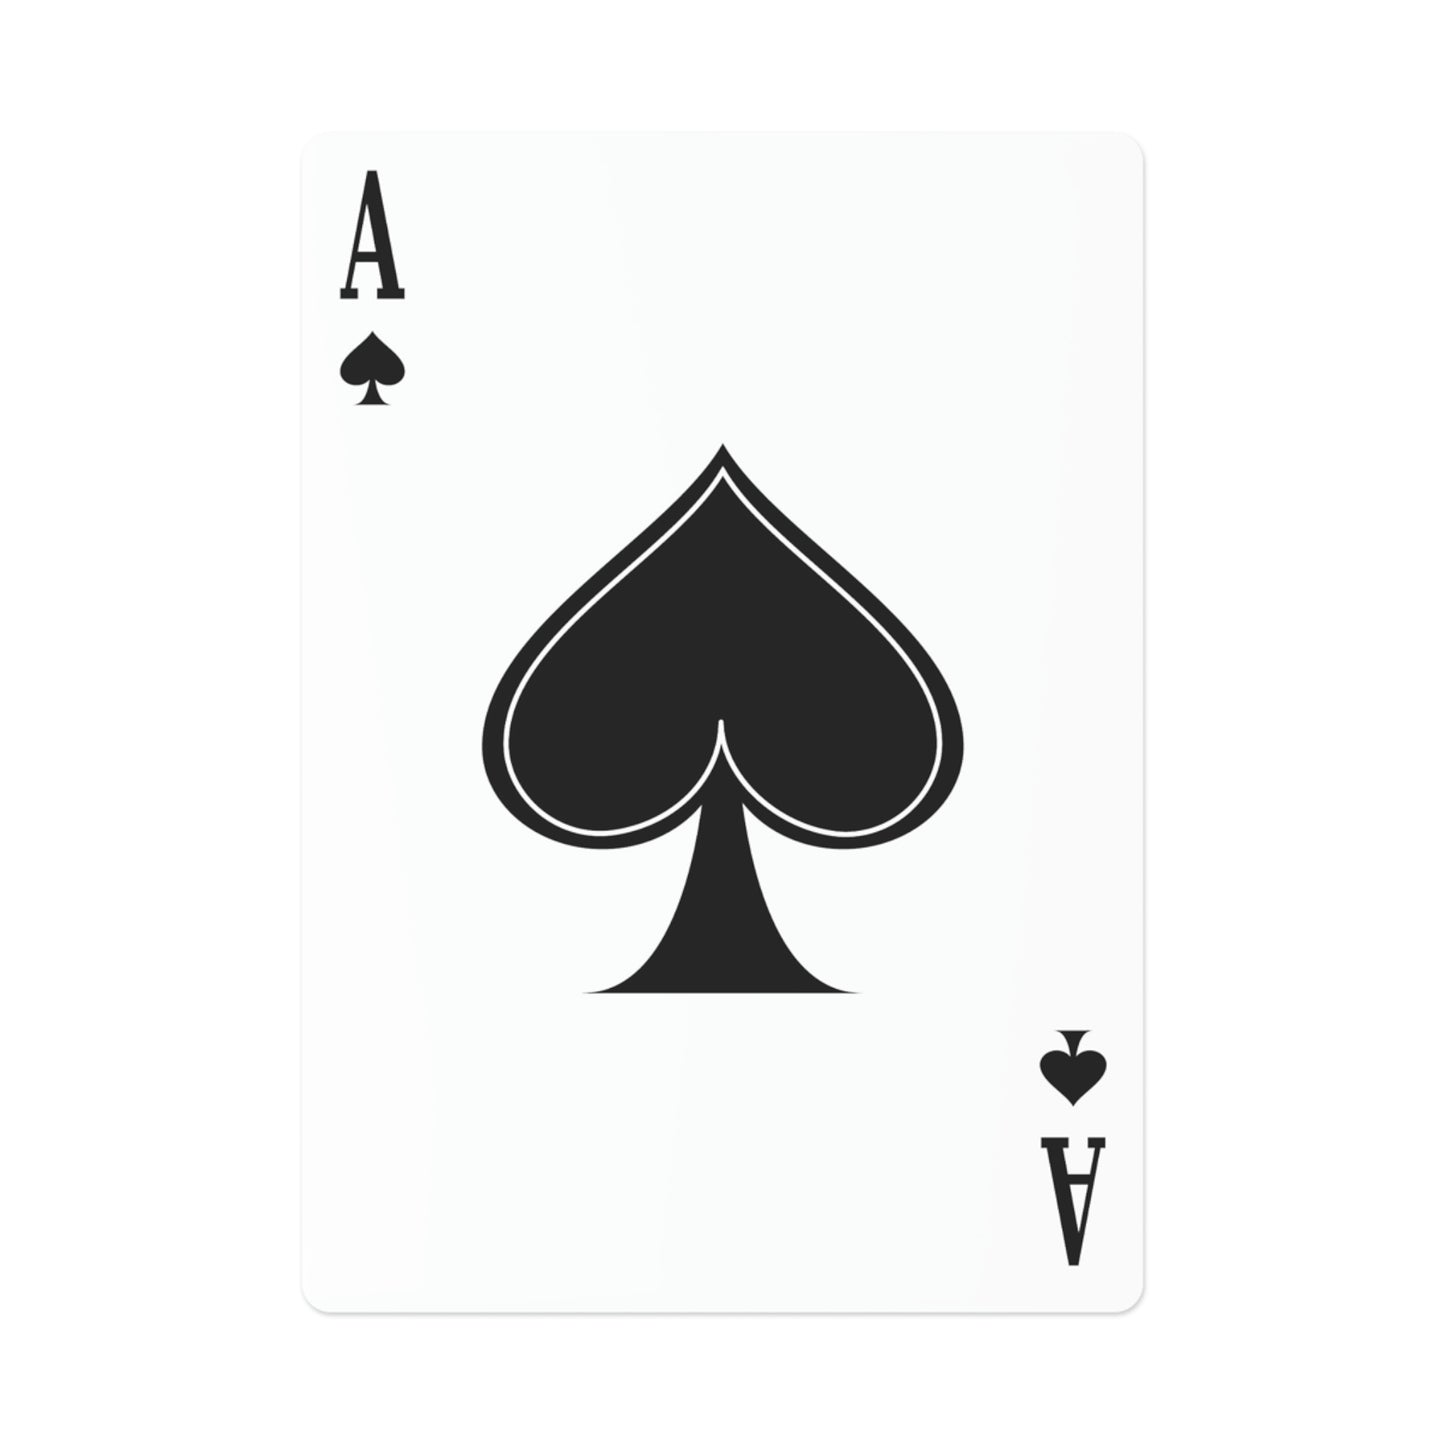 Belle- Whimsical Cow- Cartes de poker/cartes à jouer